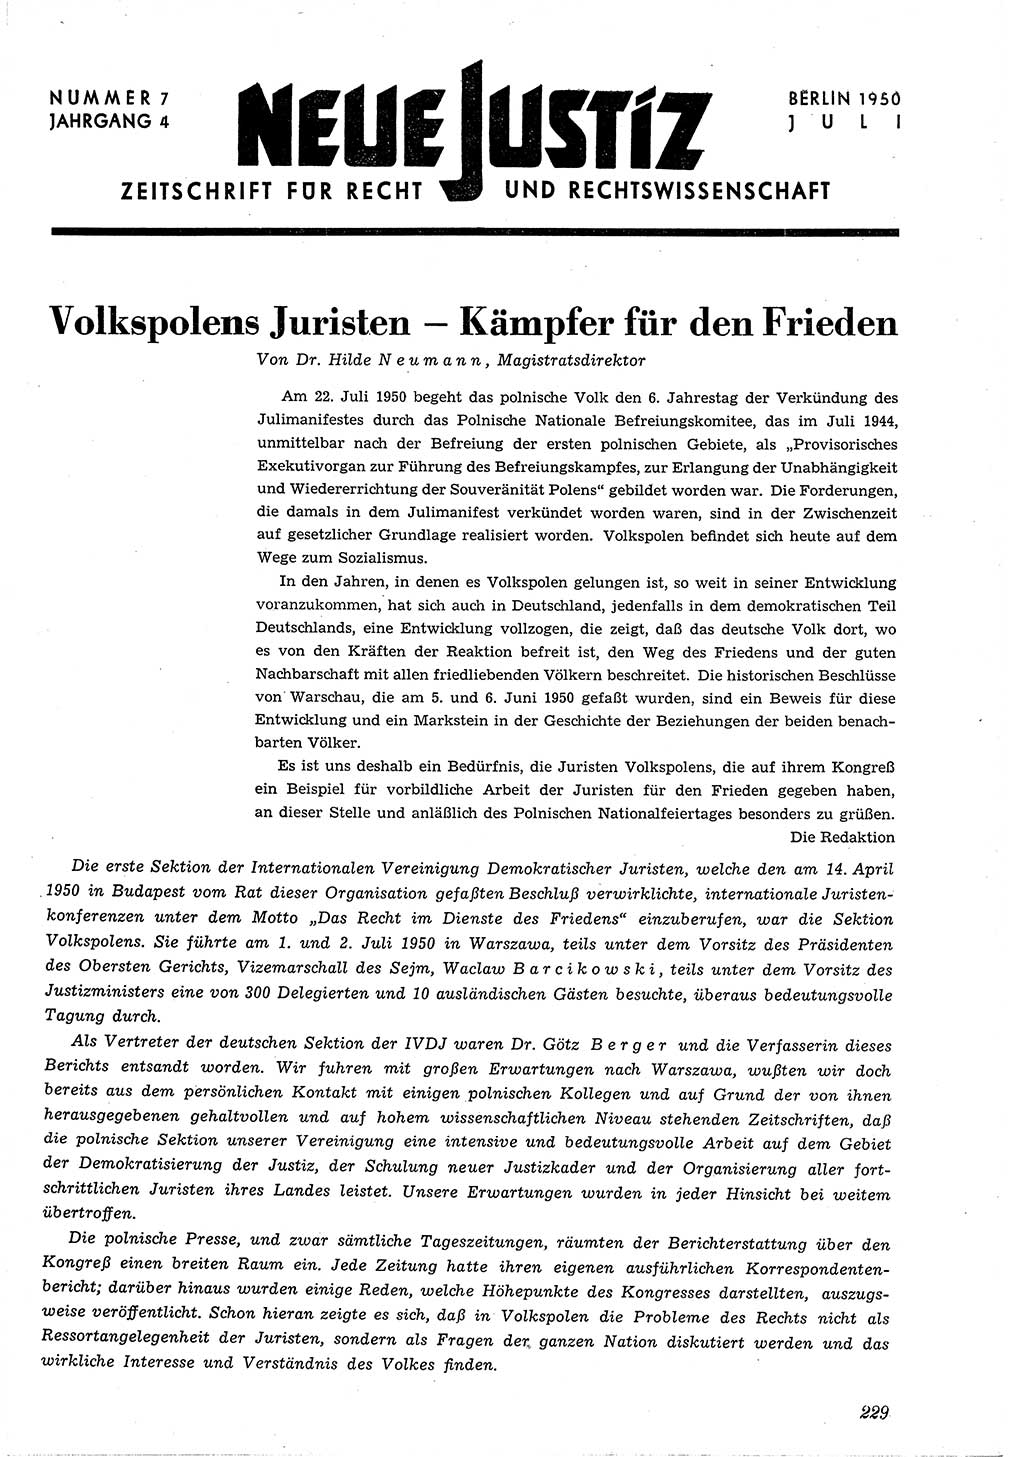 Neue Justiz (NJ), Zeitschrift für Recht und Rechtswissenschaft [Deutsche Demokratische Republik (DDR)], 4. Jahrgang 1950, Seite 229 (NJ DDR 1950, S. 229)